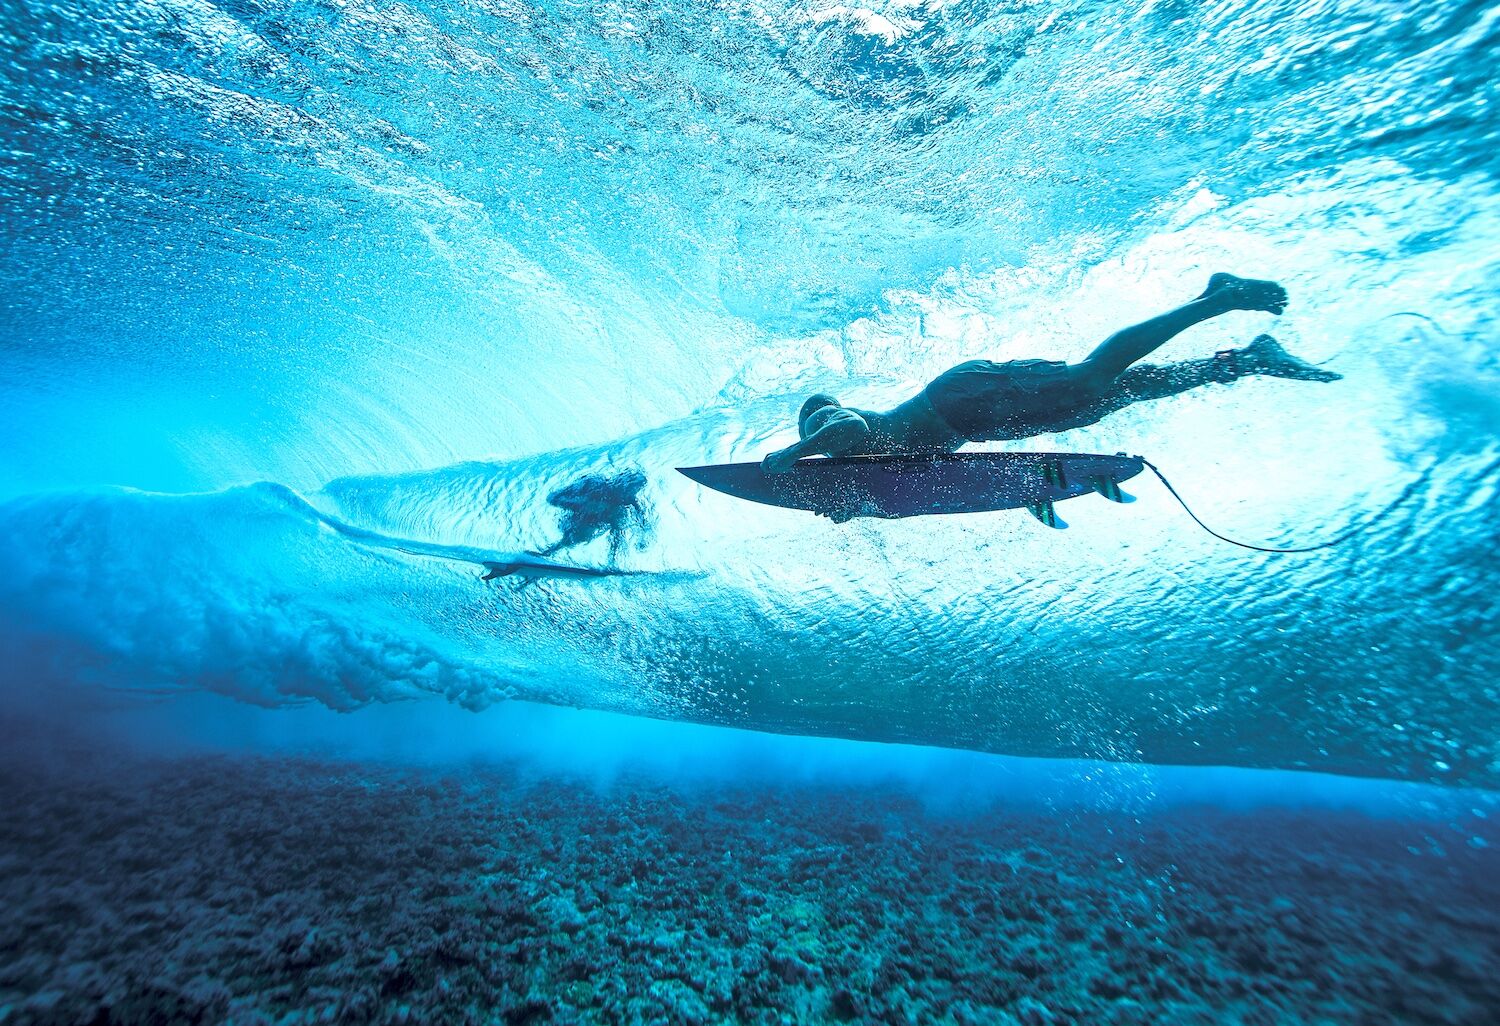 Todd Glaser underwater